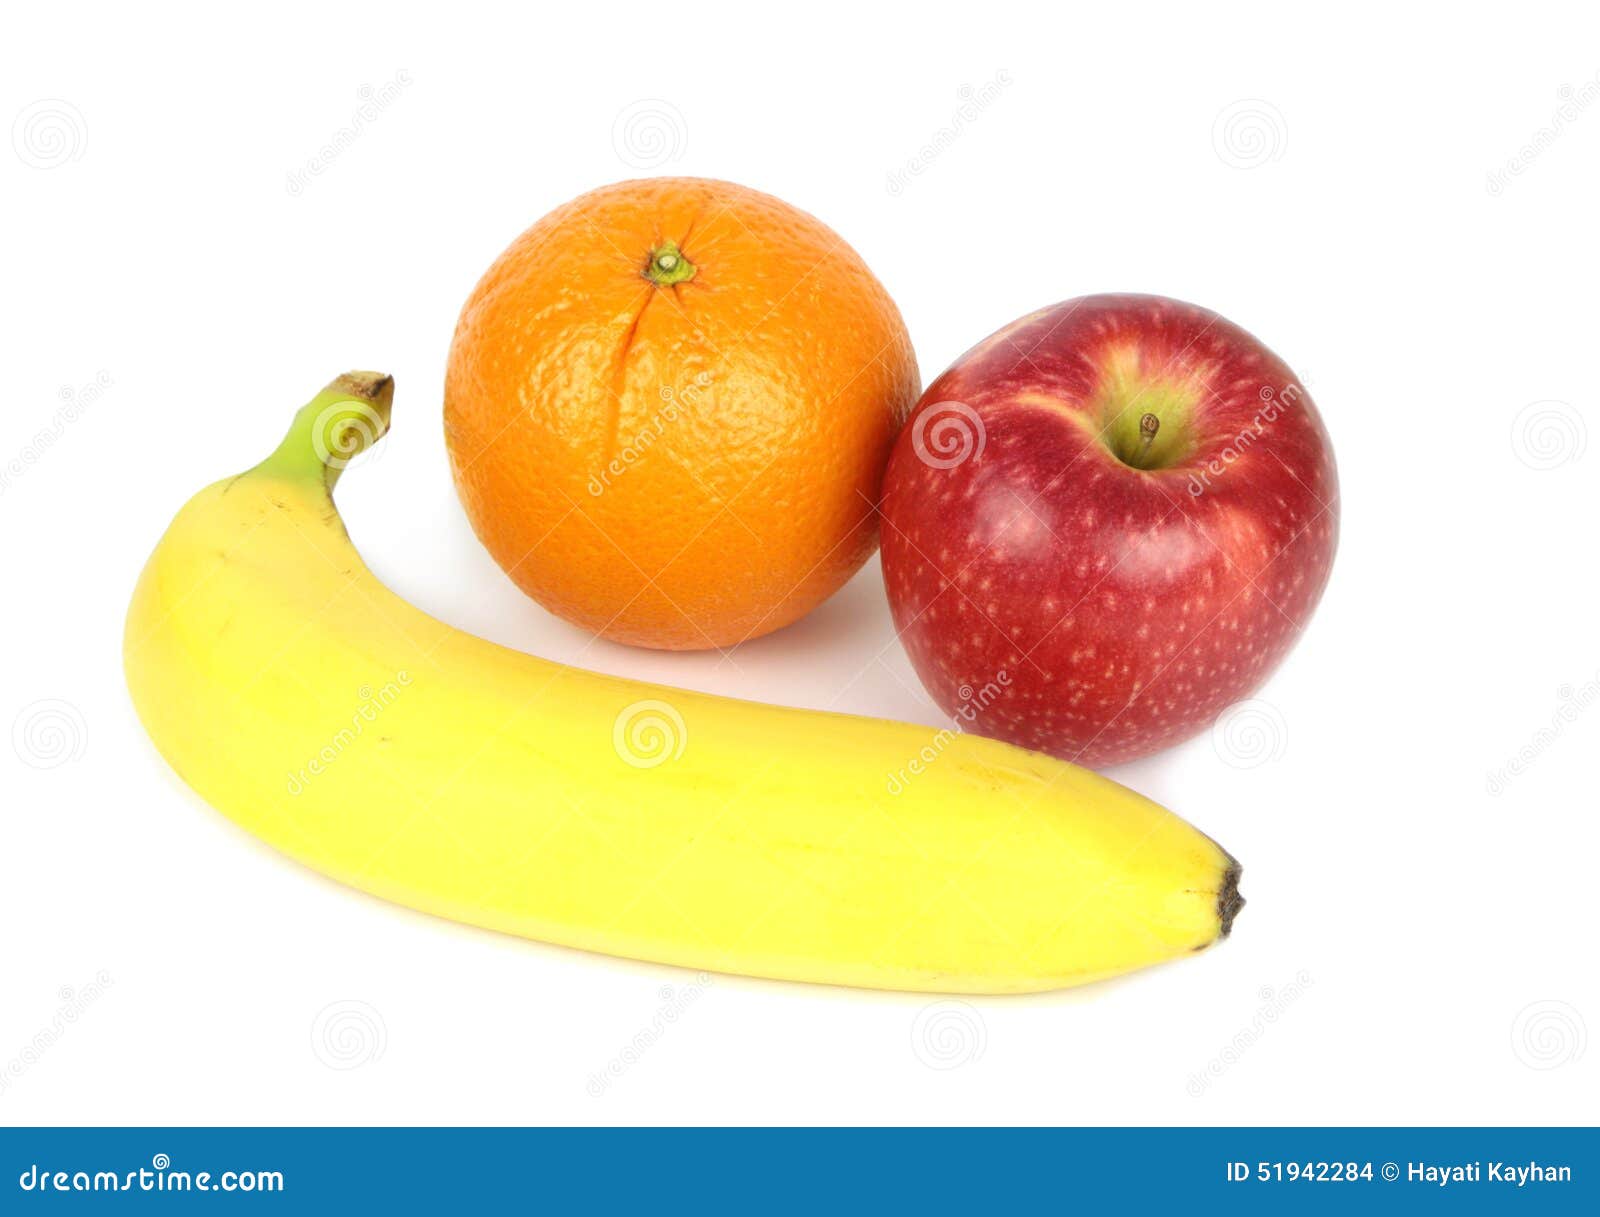 Orange Apple And Banana Isolated On White Background Stock Photo